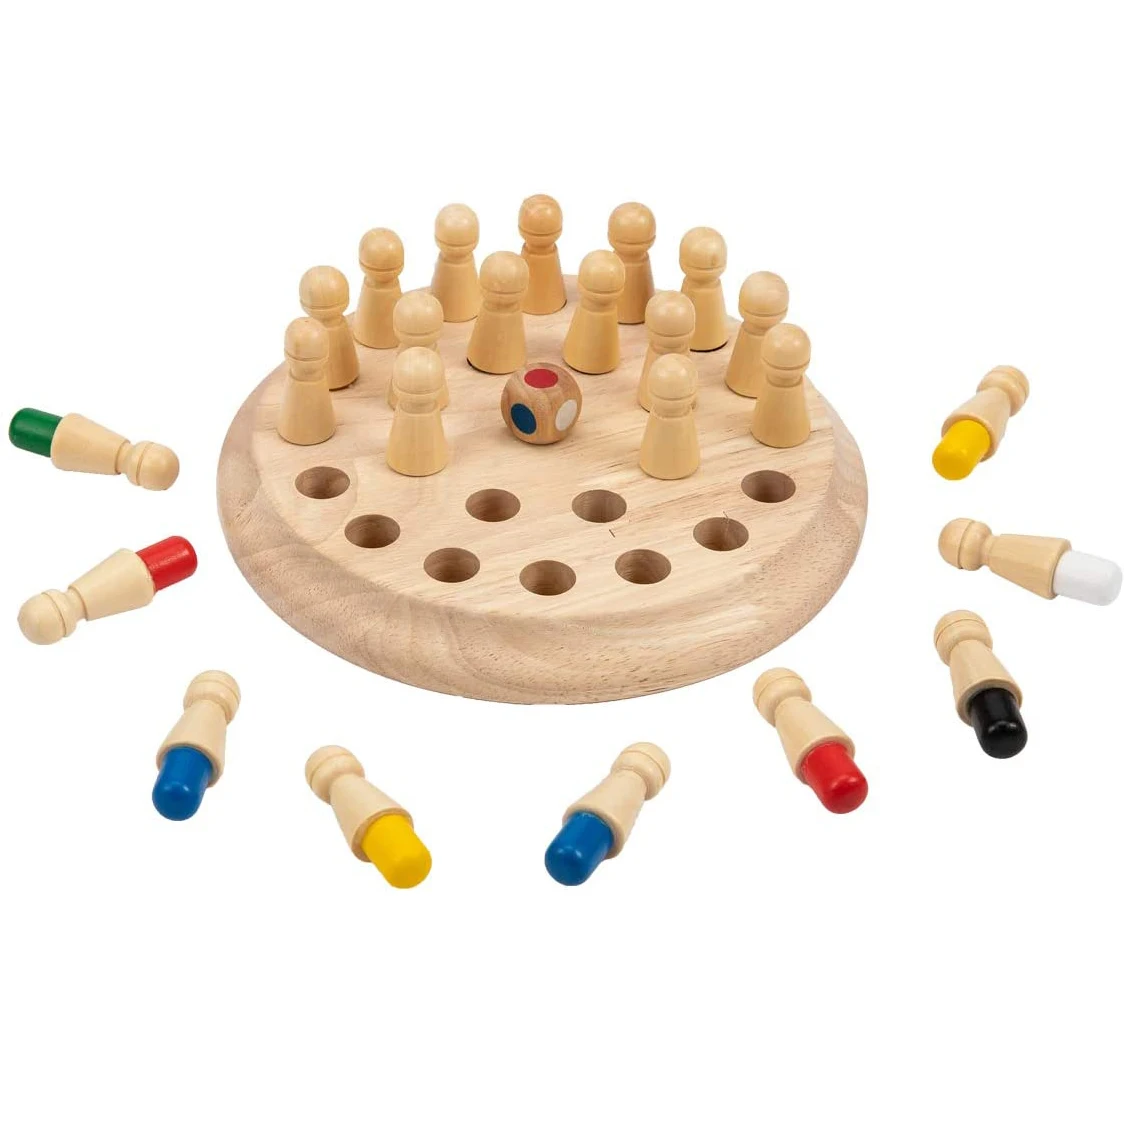 

Деревянный памяти матч Придерживайтесь шахматы игра весело блок настольная игра развивающая Цвет познавательные игрушки умения для детей ...